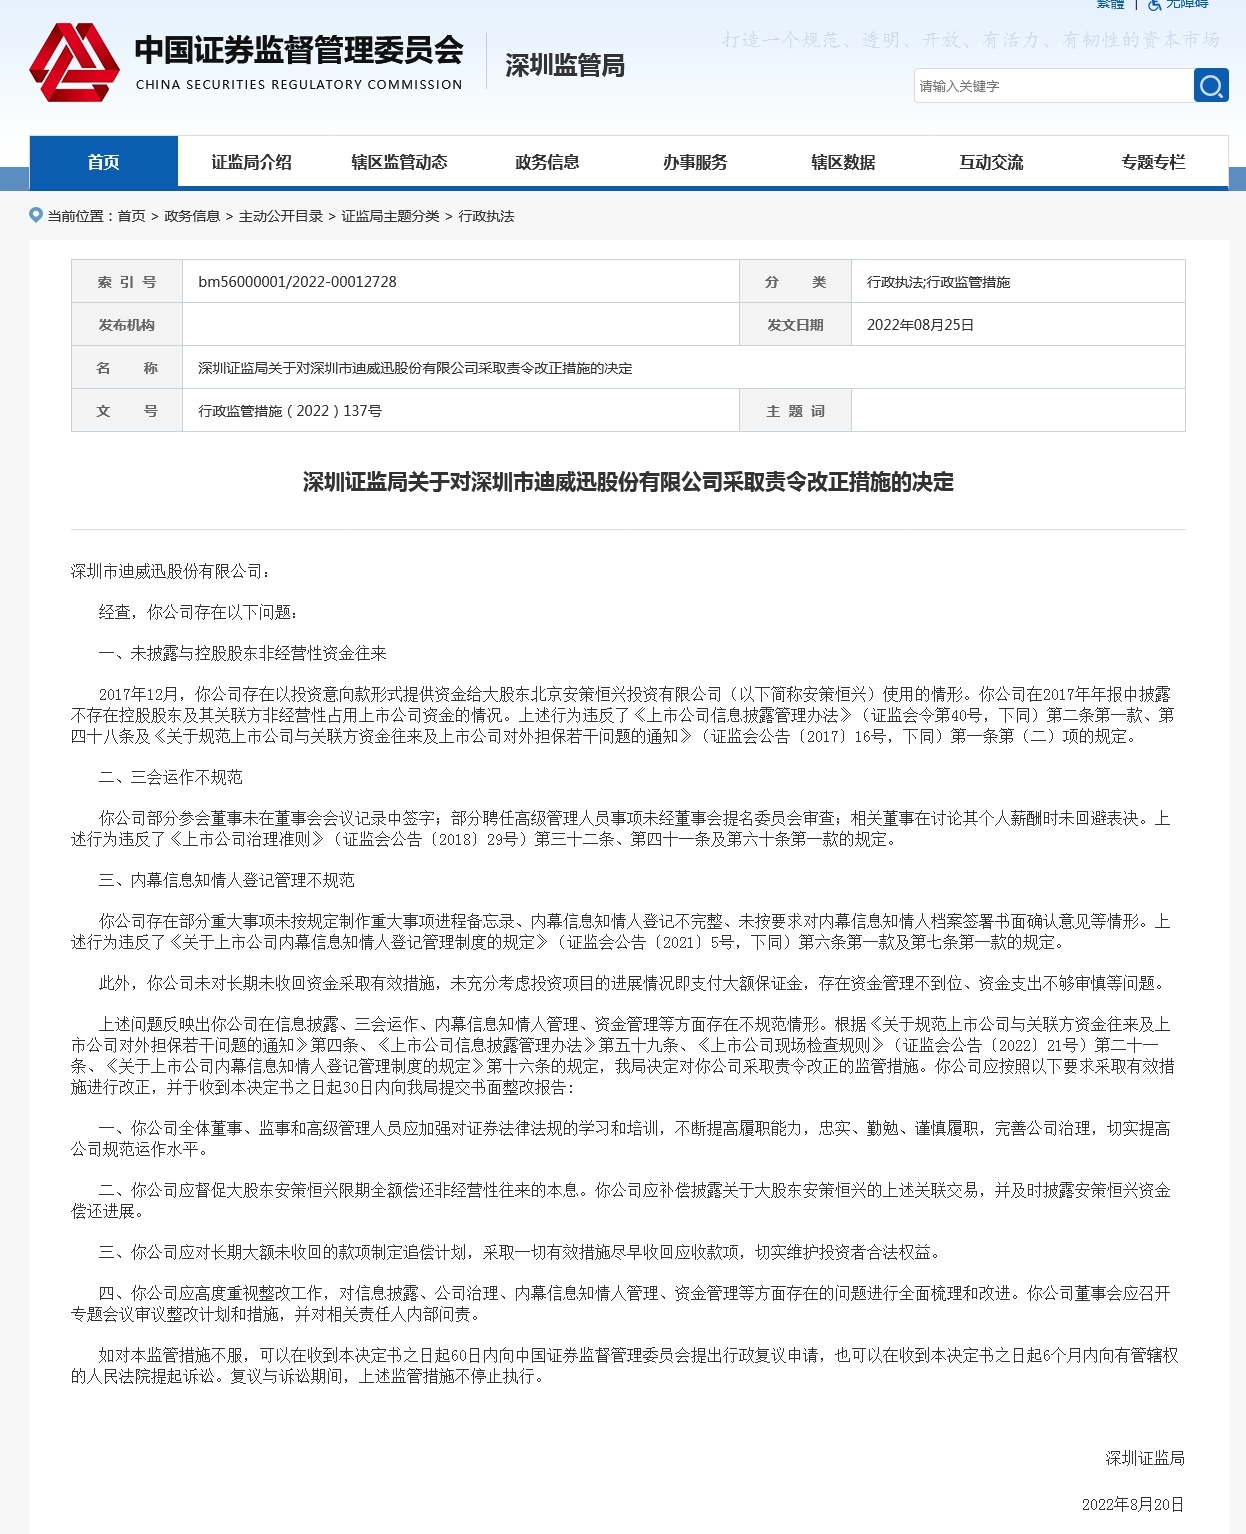 信披、资金管理等不规范迪威迅被深圳证监局责令改正